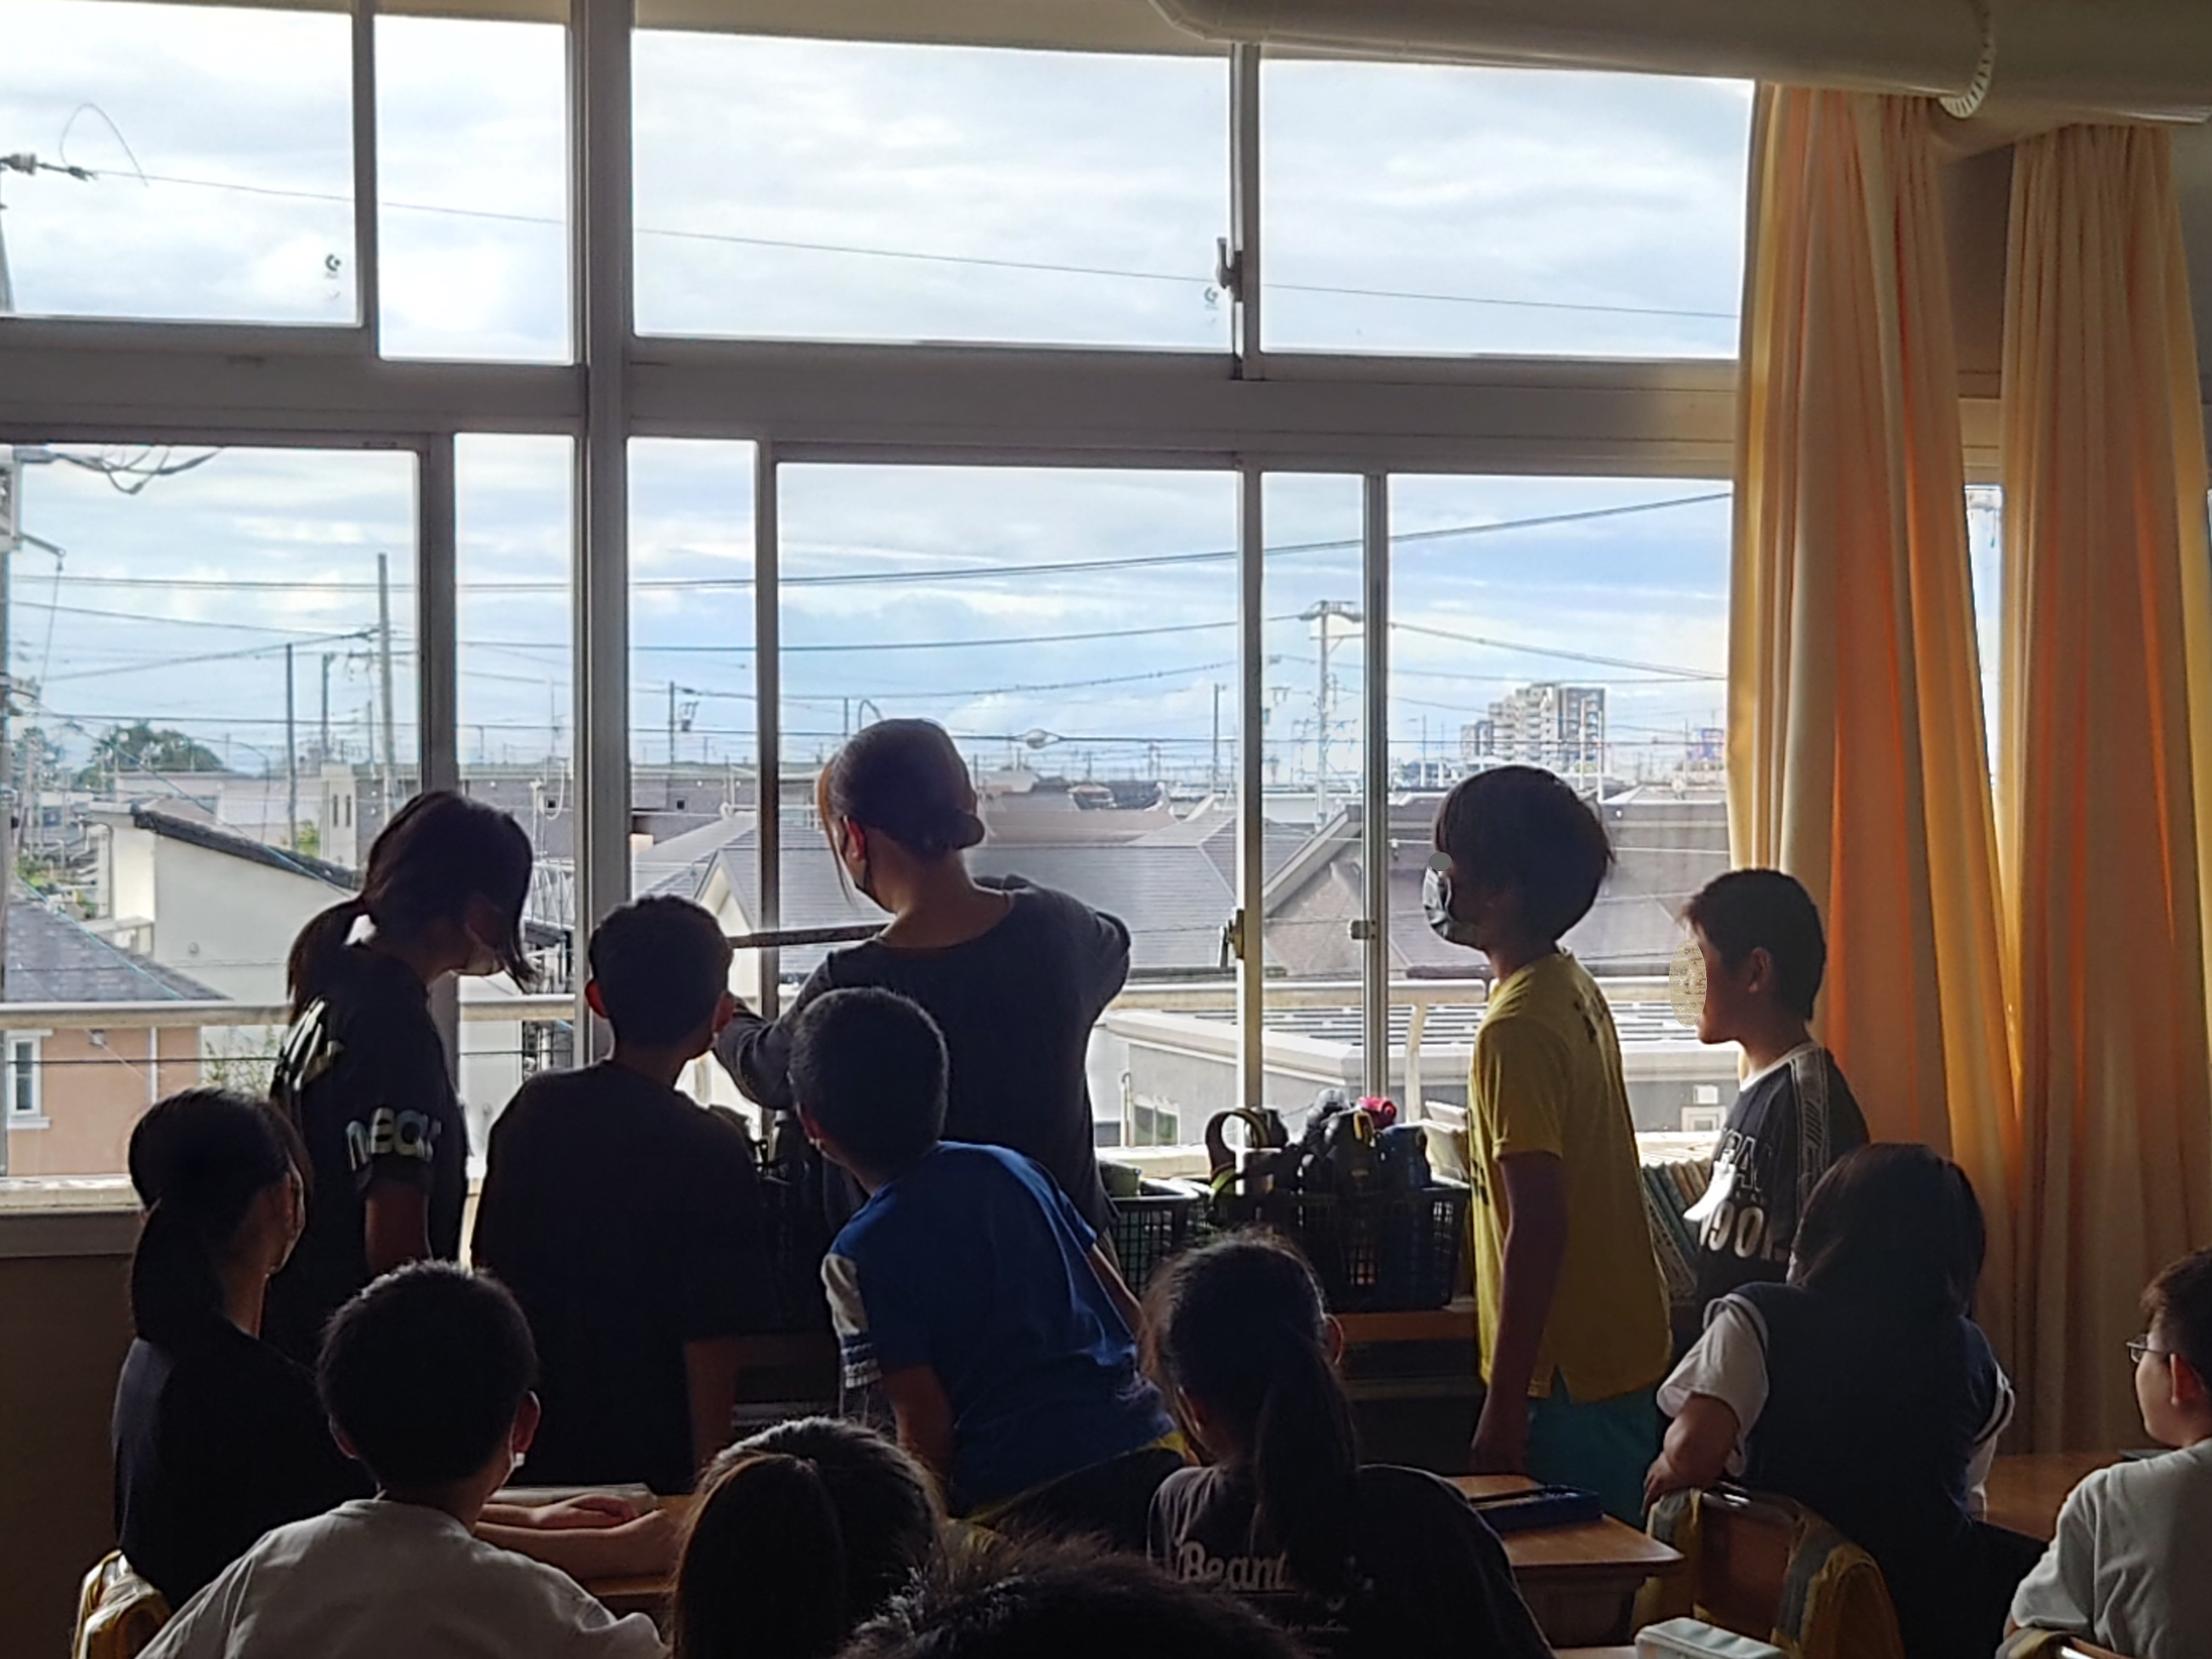 石川研究室の学生が、小学校で体験型環境講座を実施したときの様子。コロナ禍でどのぐらい窓を開けたらよいのかを考えました。